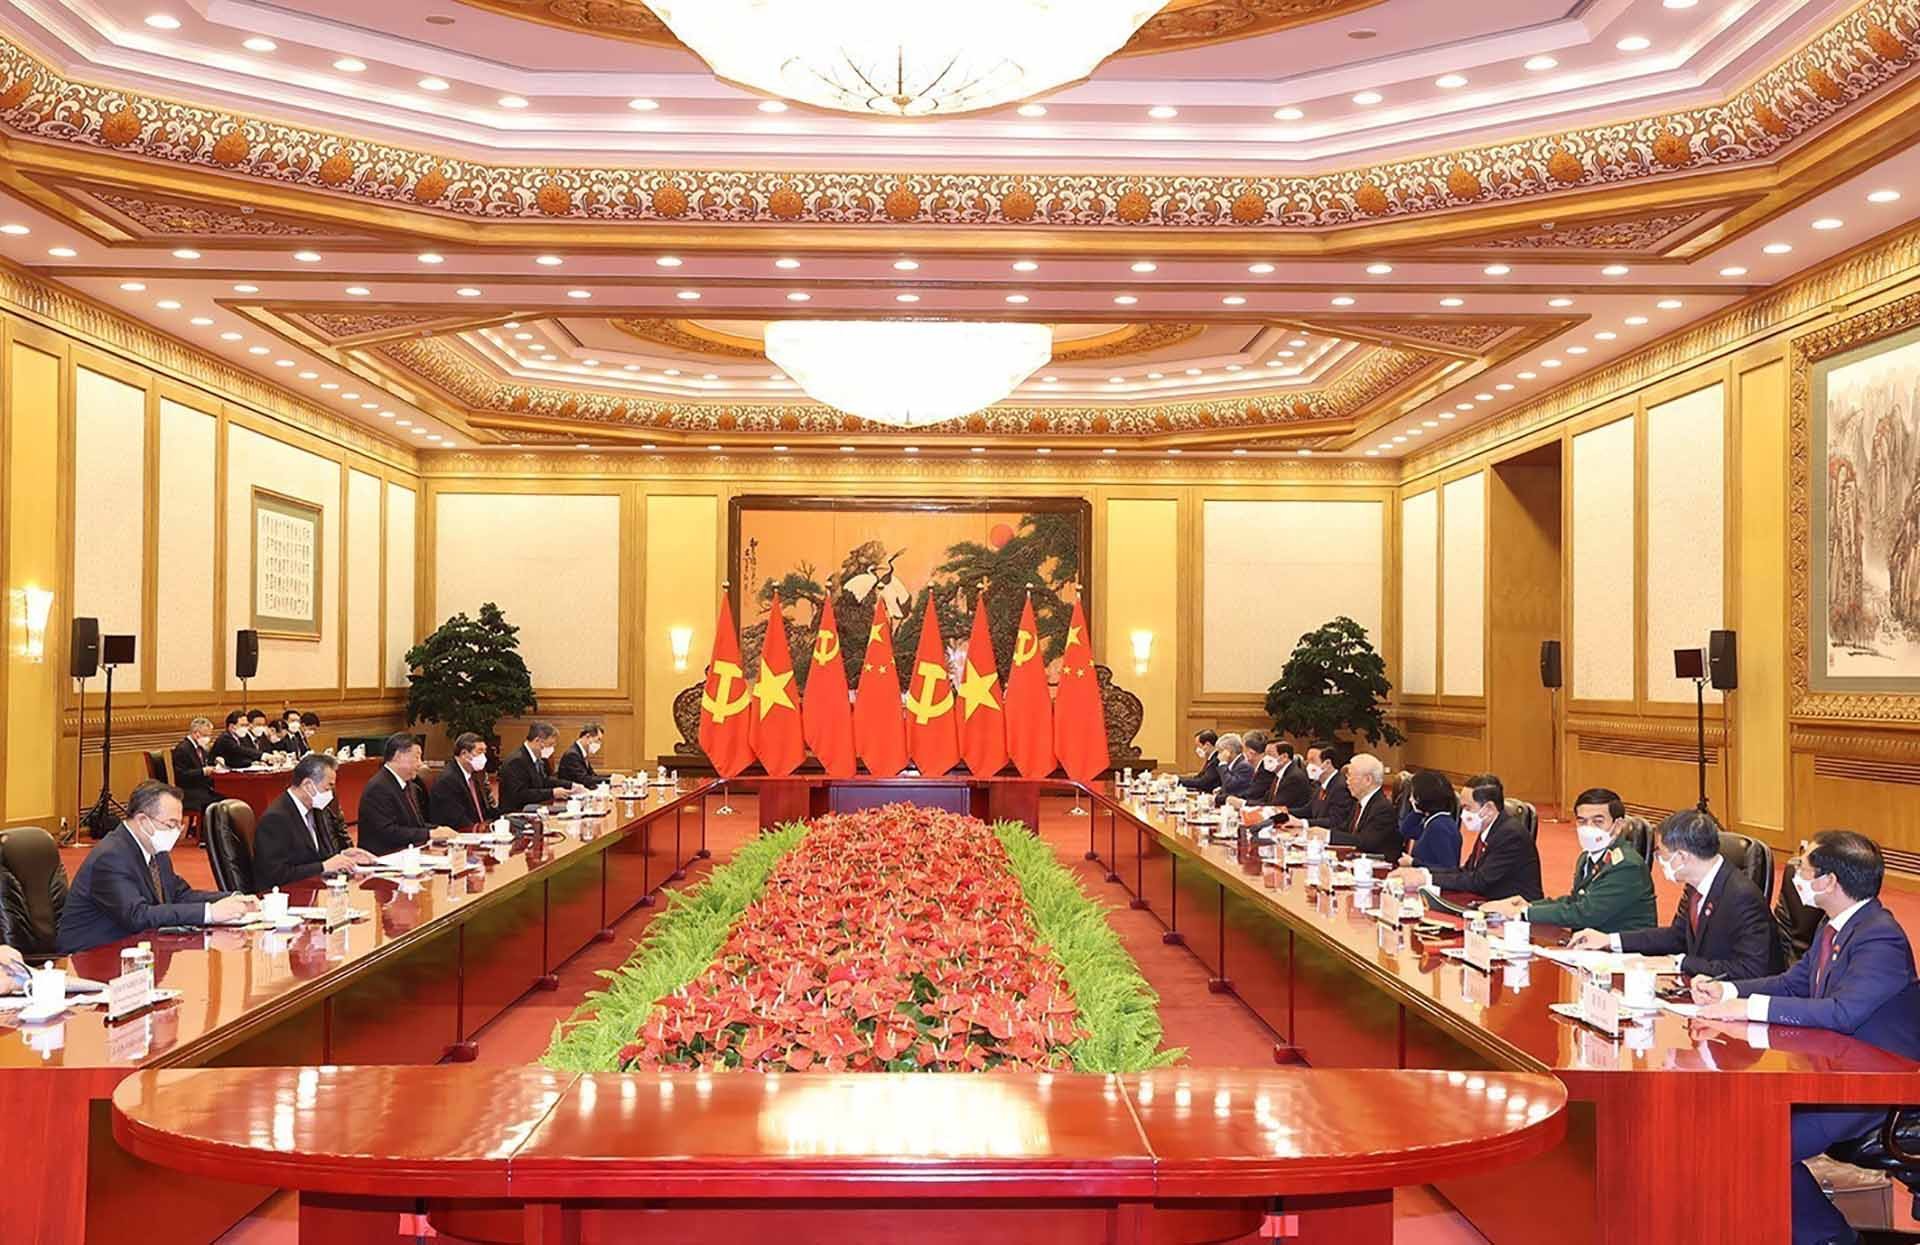 Trung Quốc Nhật báo: Chuyến thăm Việt Nam của Tổng Bí thư, Chủ tịch Tập Cận Bình góp phần đưa quan hệ láng giềng lên tầm cao mới